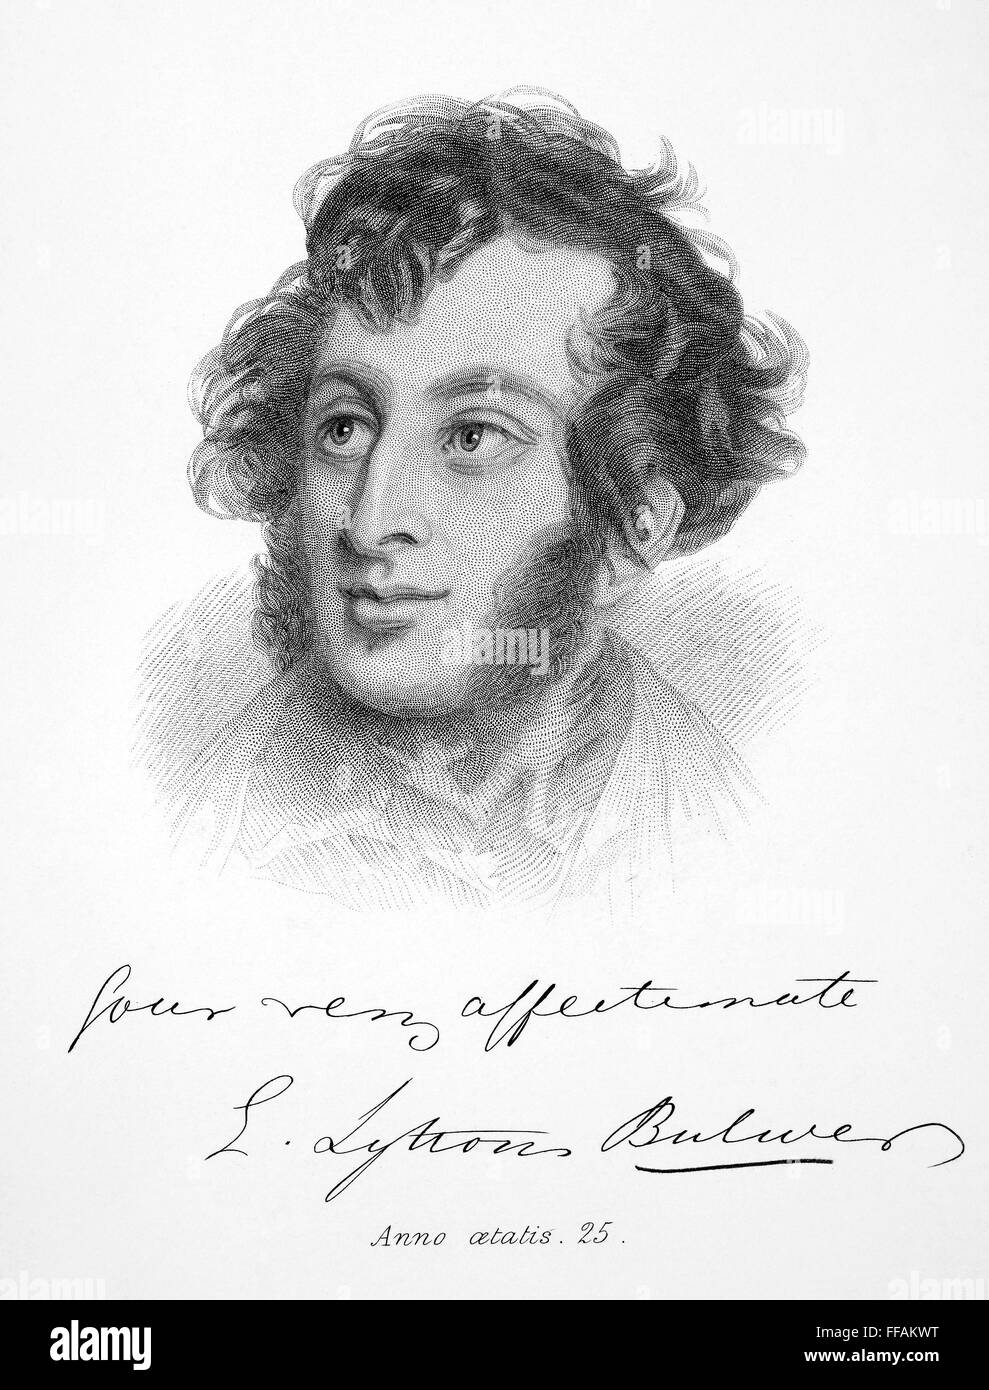 EDWARD BULWER LYTTON /n(1803-1873). 1er baron Lytton de Knebworth. Romancier et dramaturge anglais. Vers l'âge de 25 ans. Gravure crépi), 19e siècle. Banque D'Images